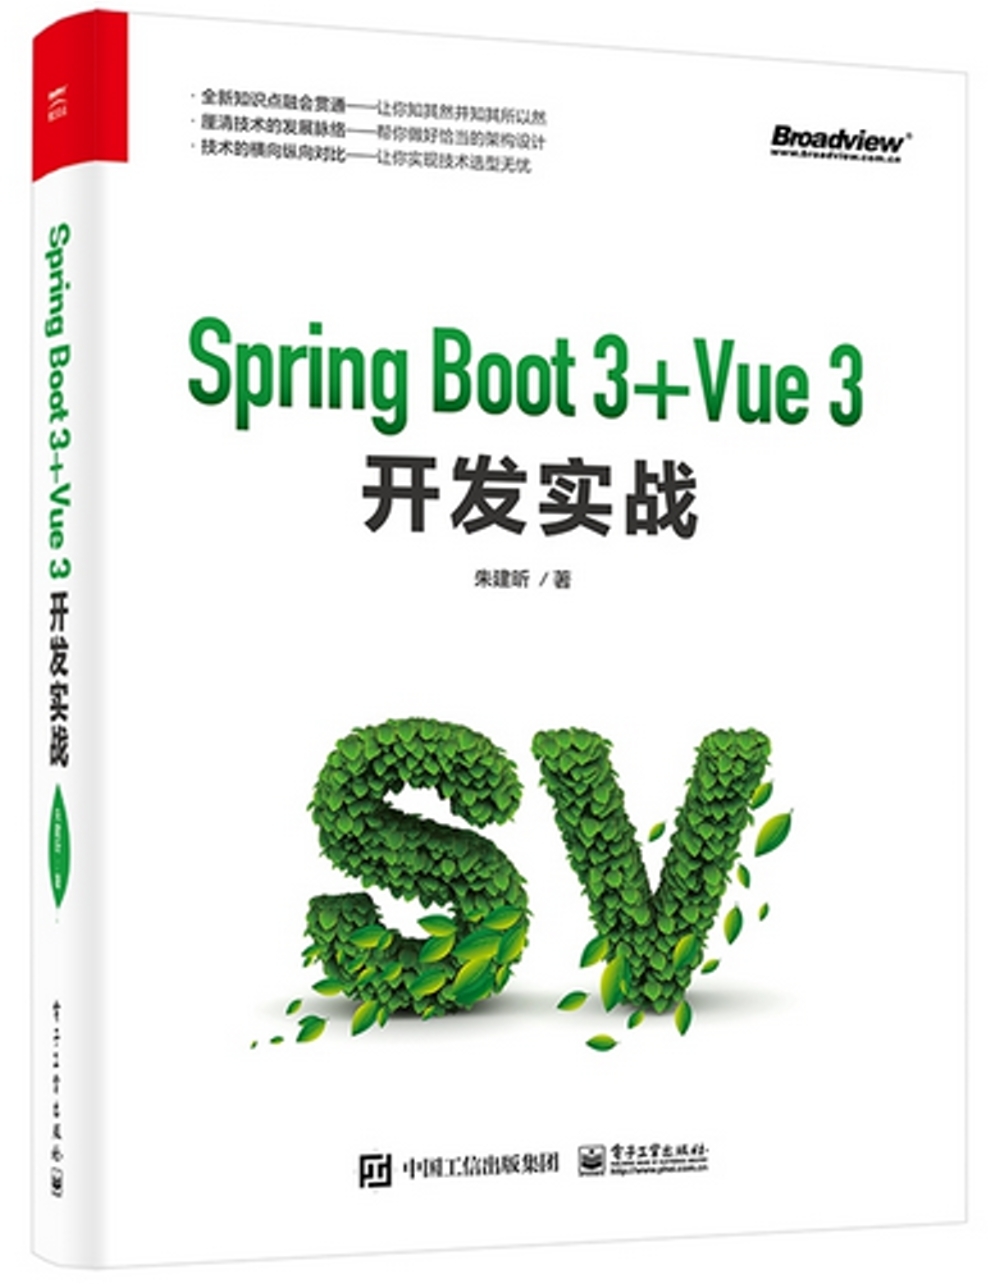 Spring Boot 3+Vue 3開發實戰